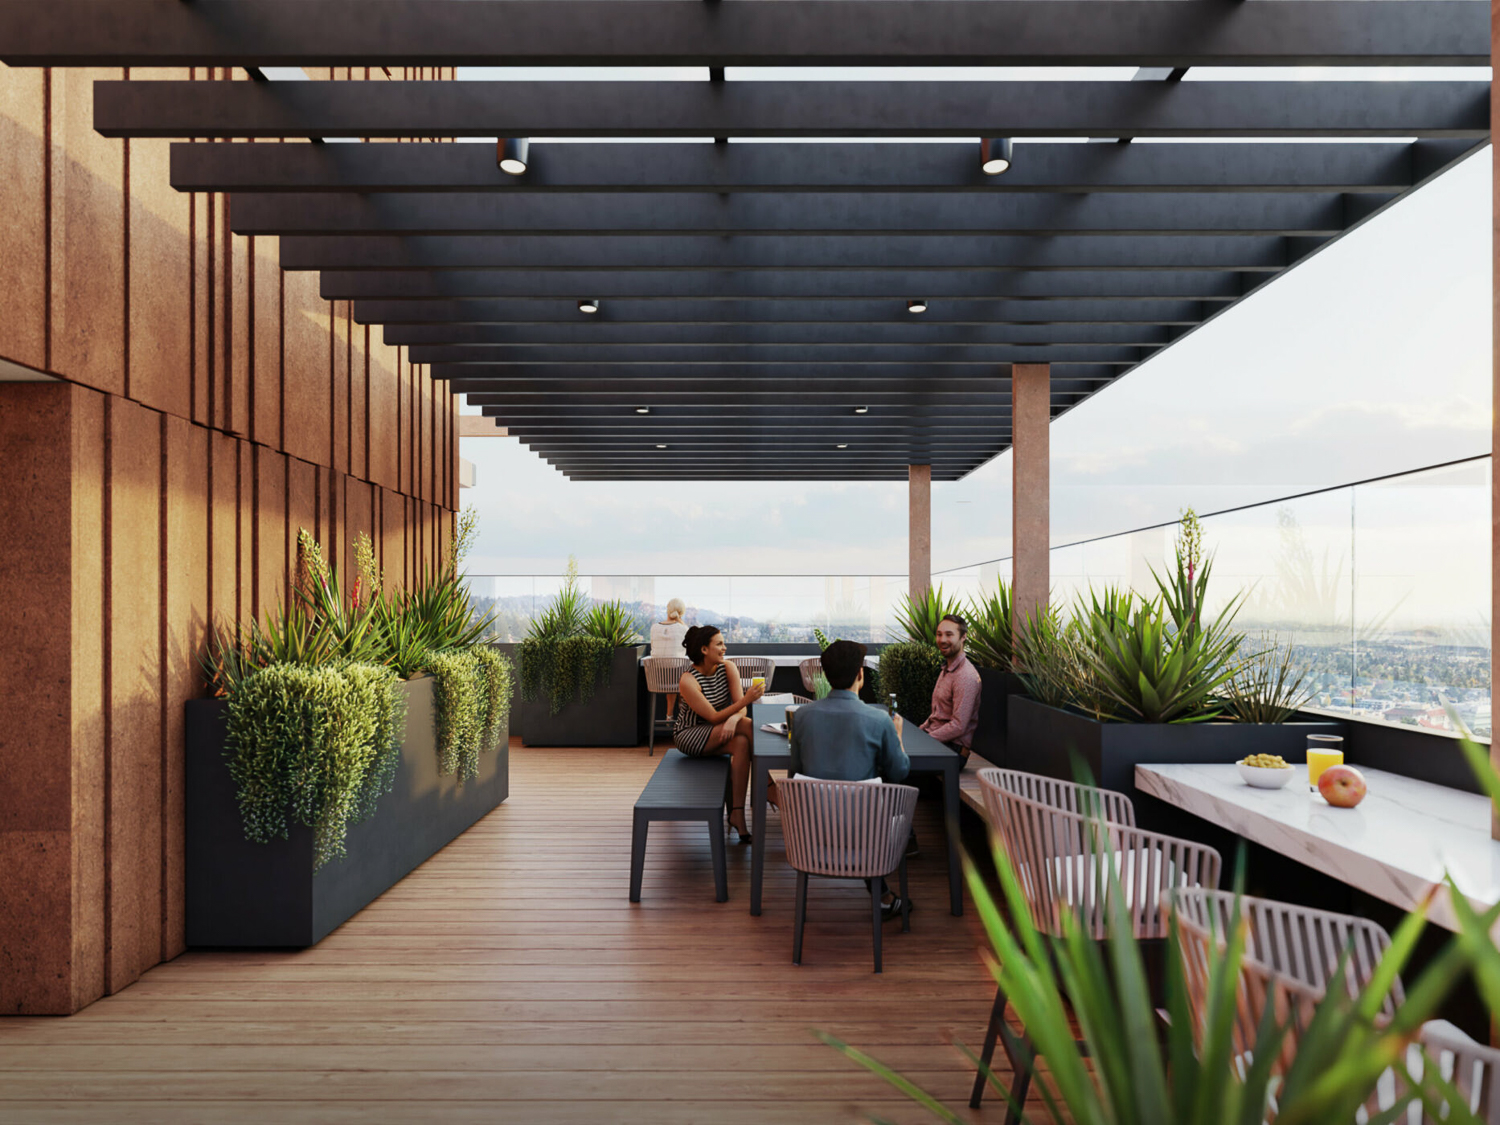 2435 Haste Street rooftop deck, rendering by Studio KDA